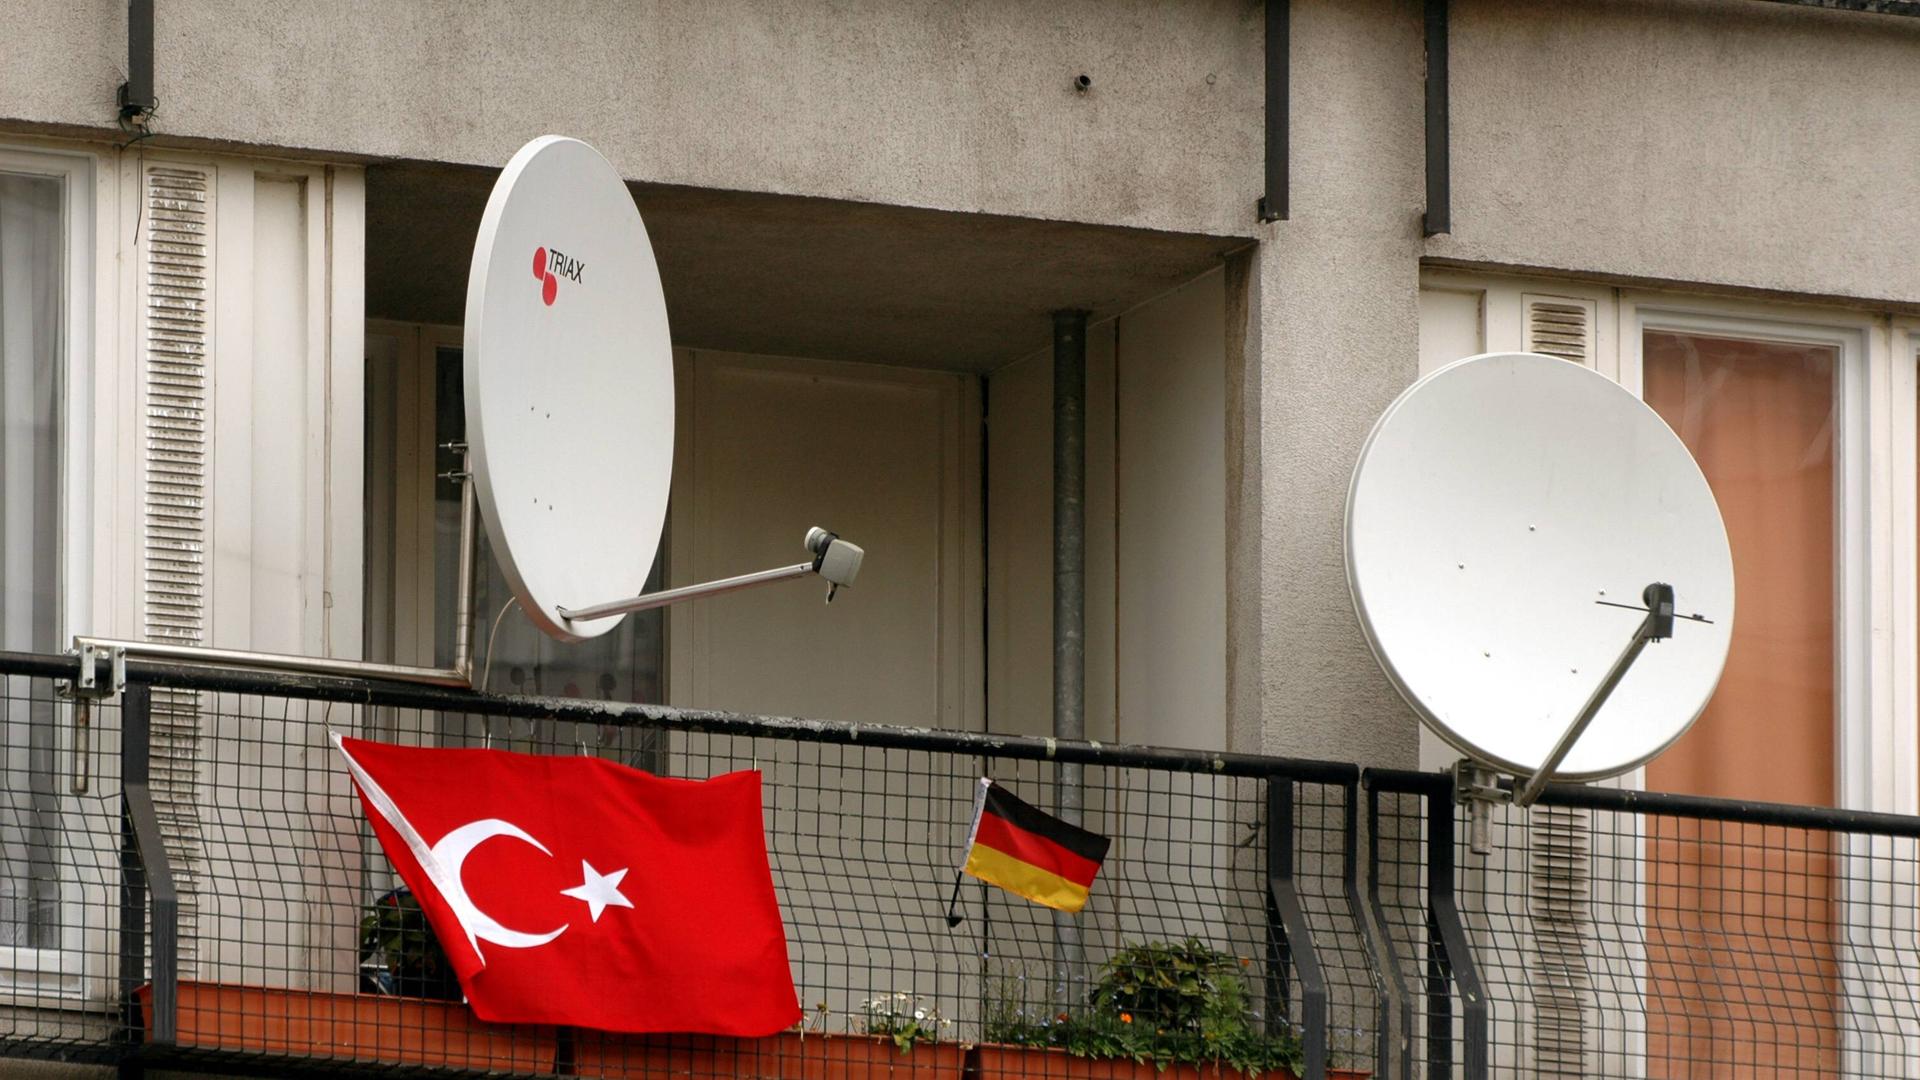 Satellitenschüsseln auf einem Balkon mit deutscher und türkischer Flagge.